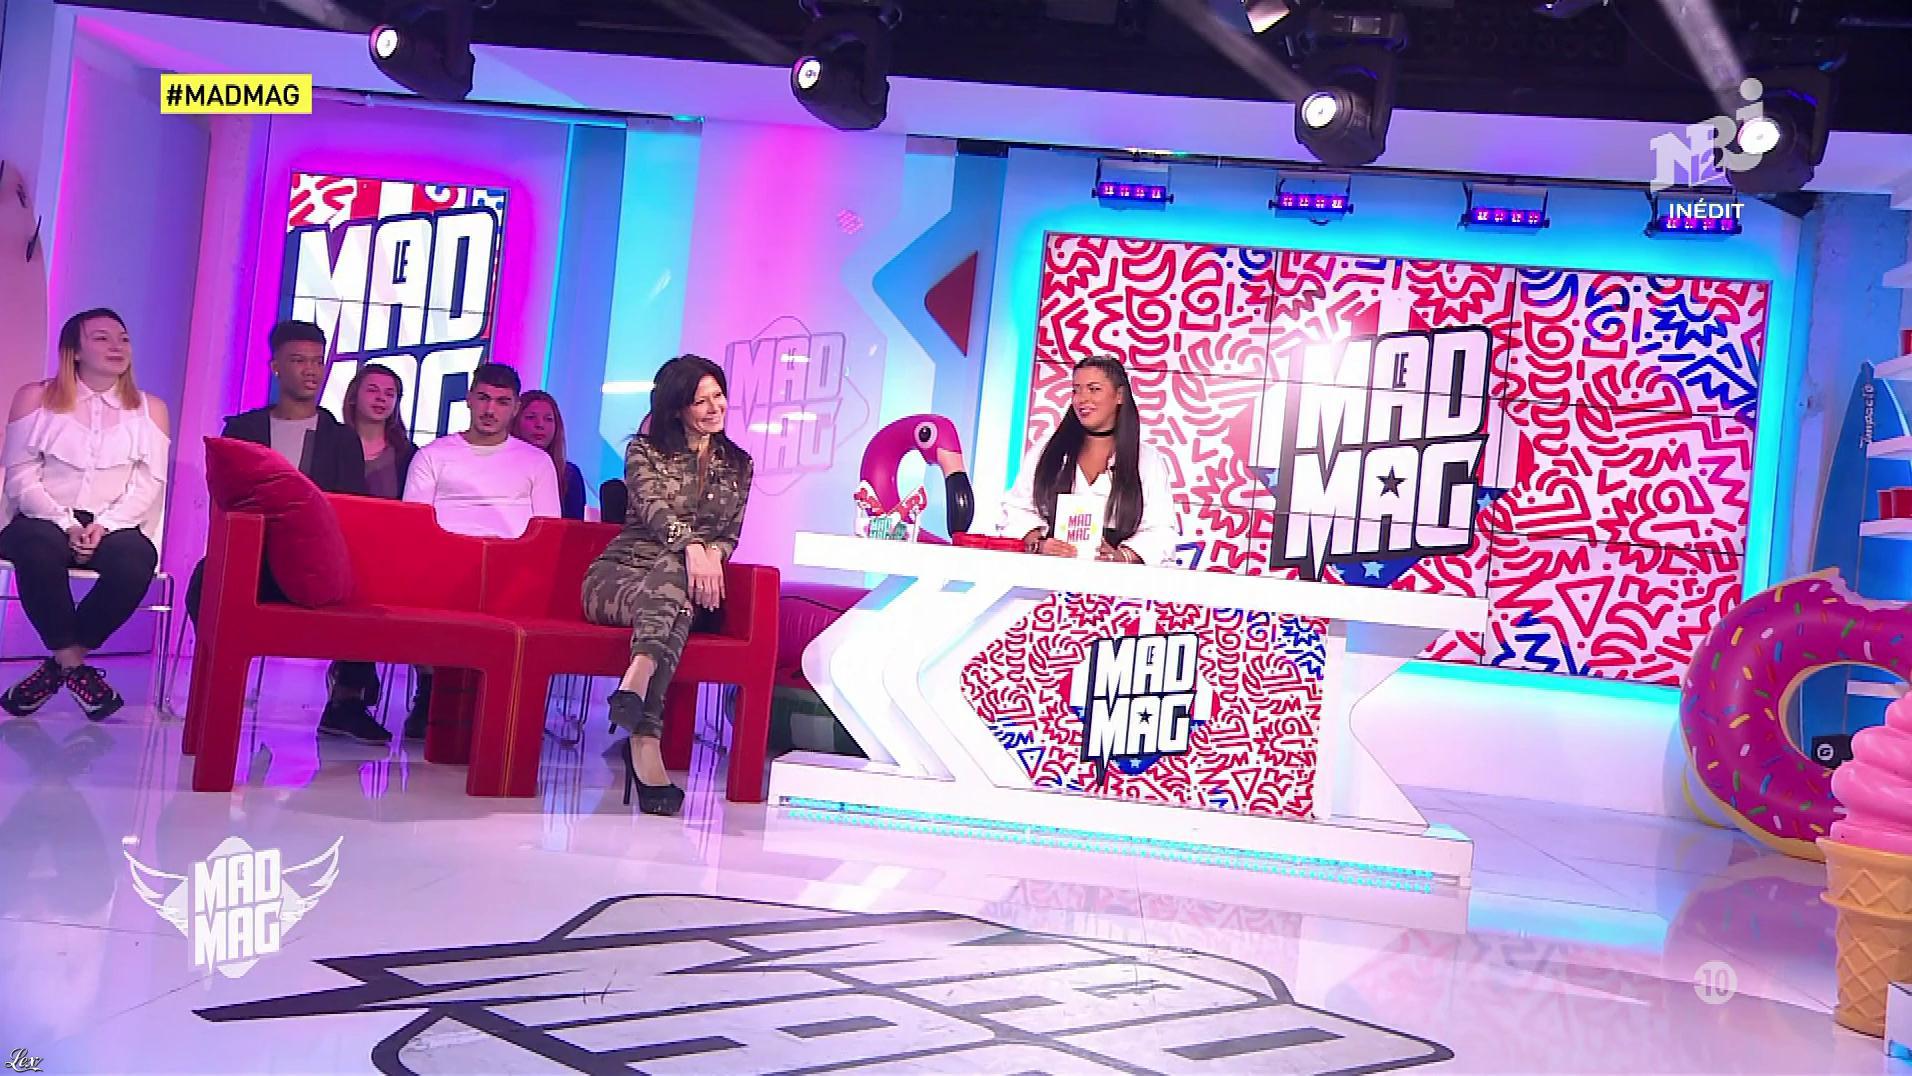 Ayem Nour et Nathalie dans le Mad Mag. Diffusé à la télévision le 01/03/17.